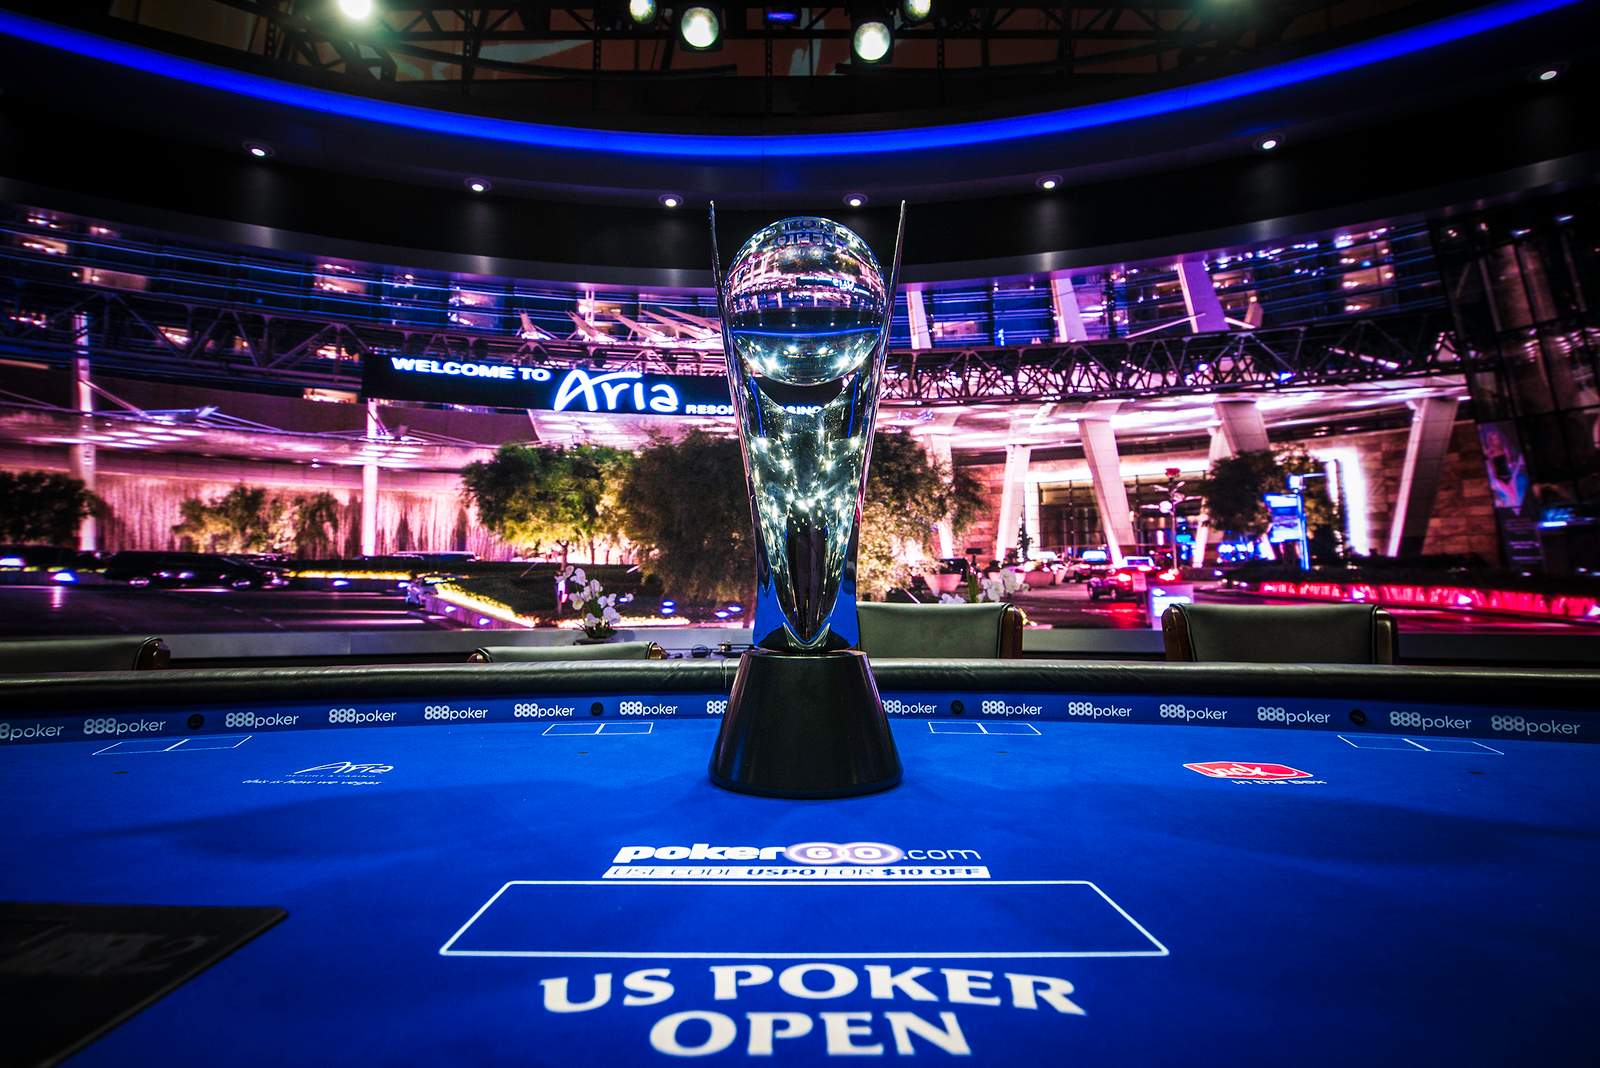 U.S. Poker Open Underway, Live on PokerGO Friday